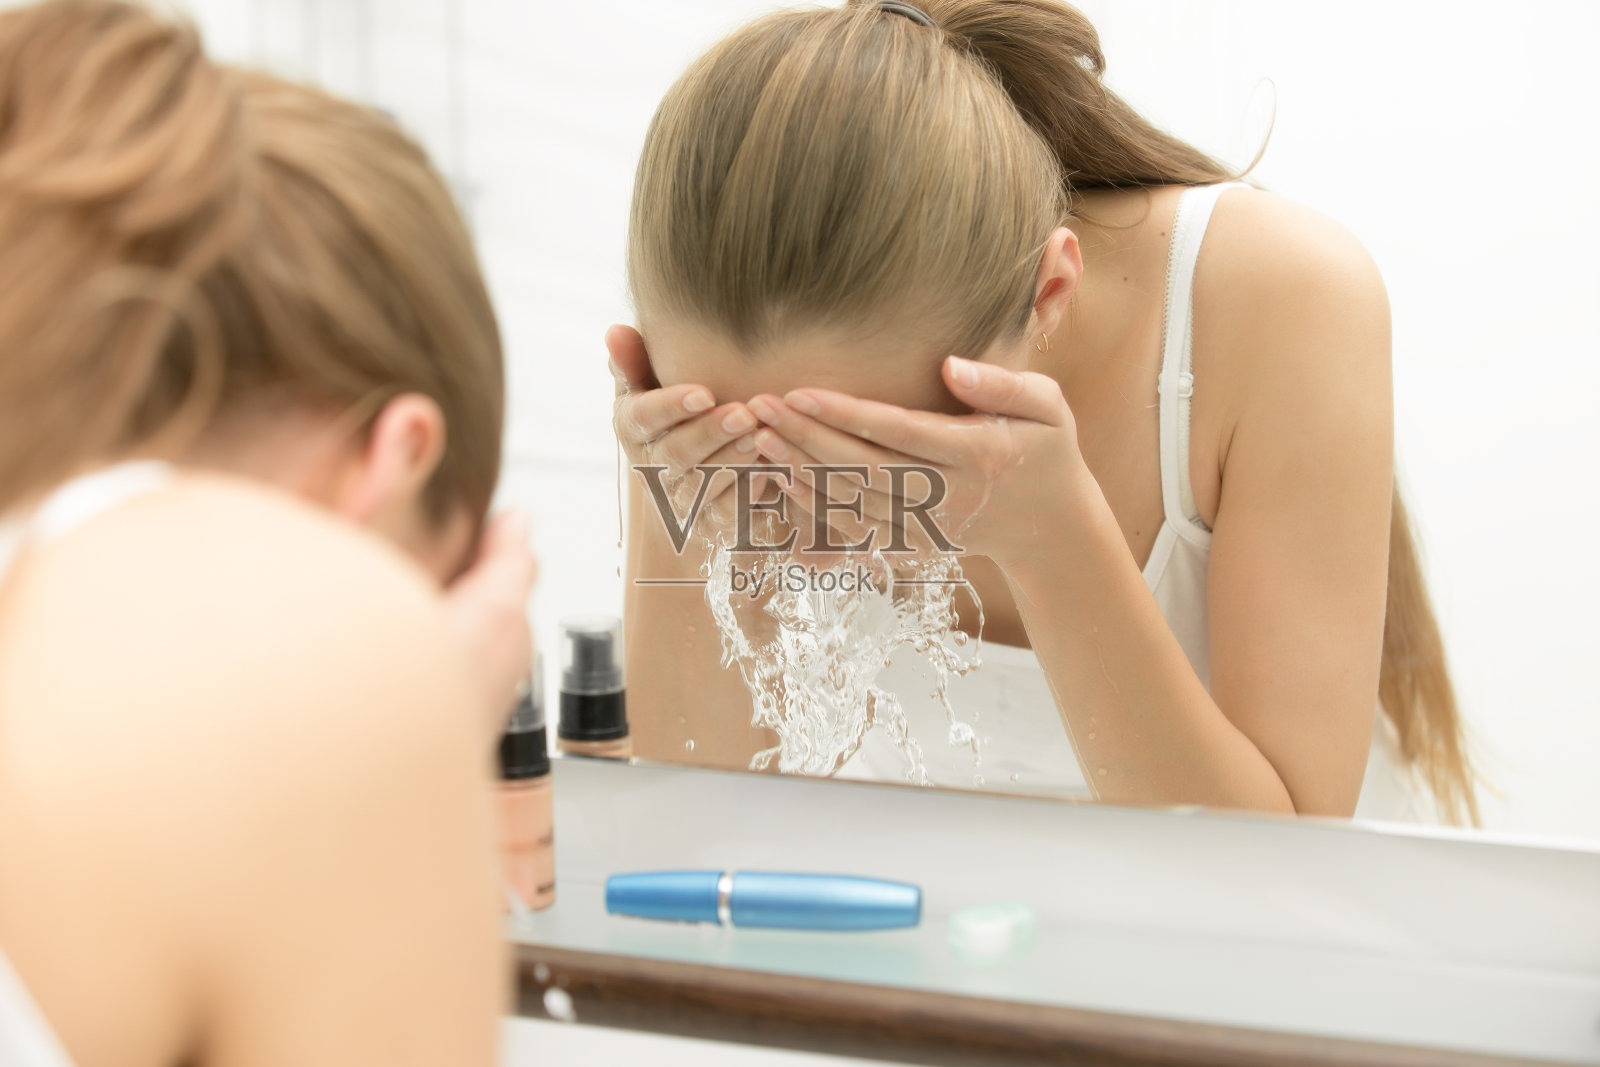 年轻女性用清水洗脸照片摄影图片